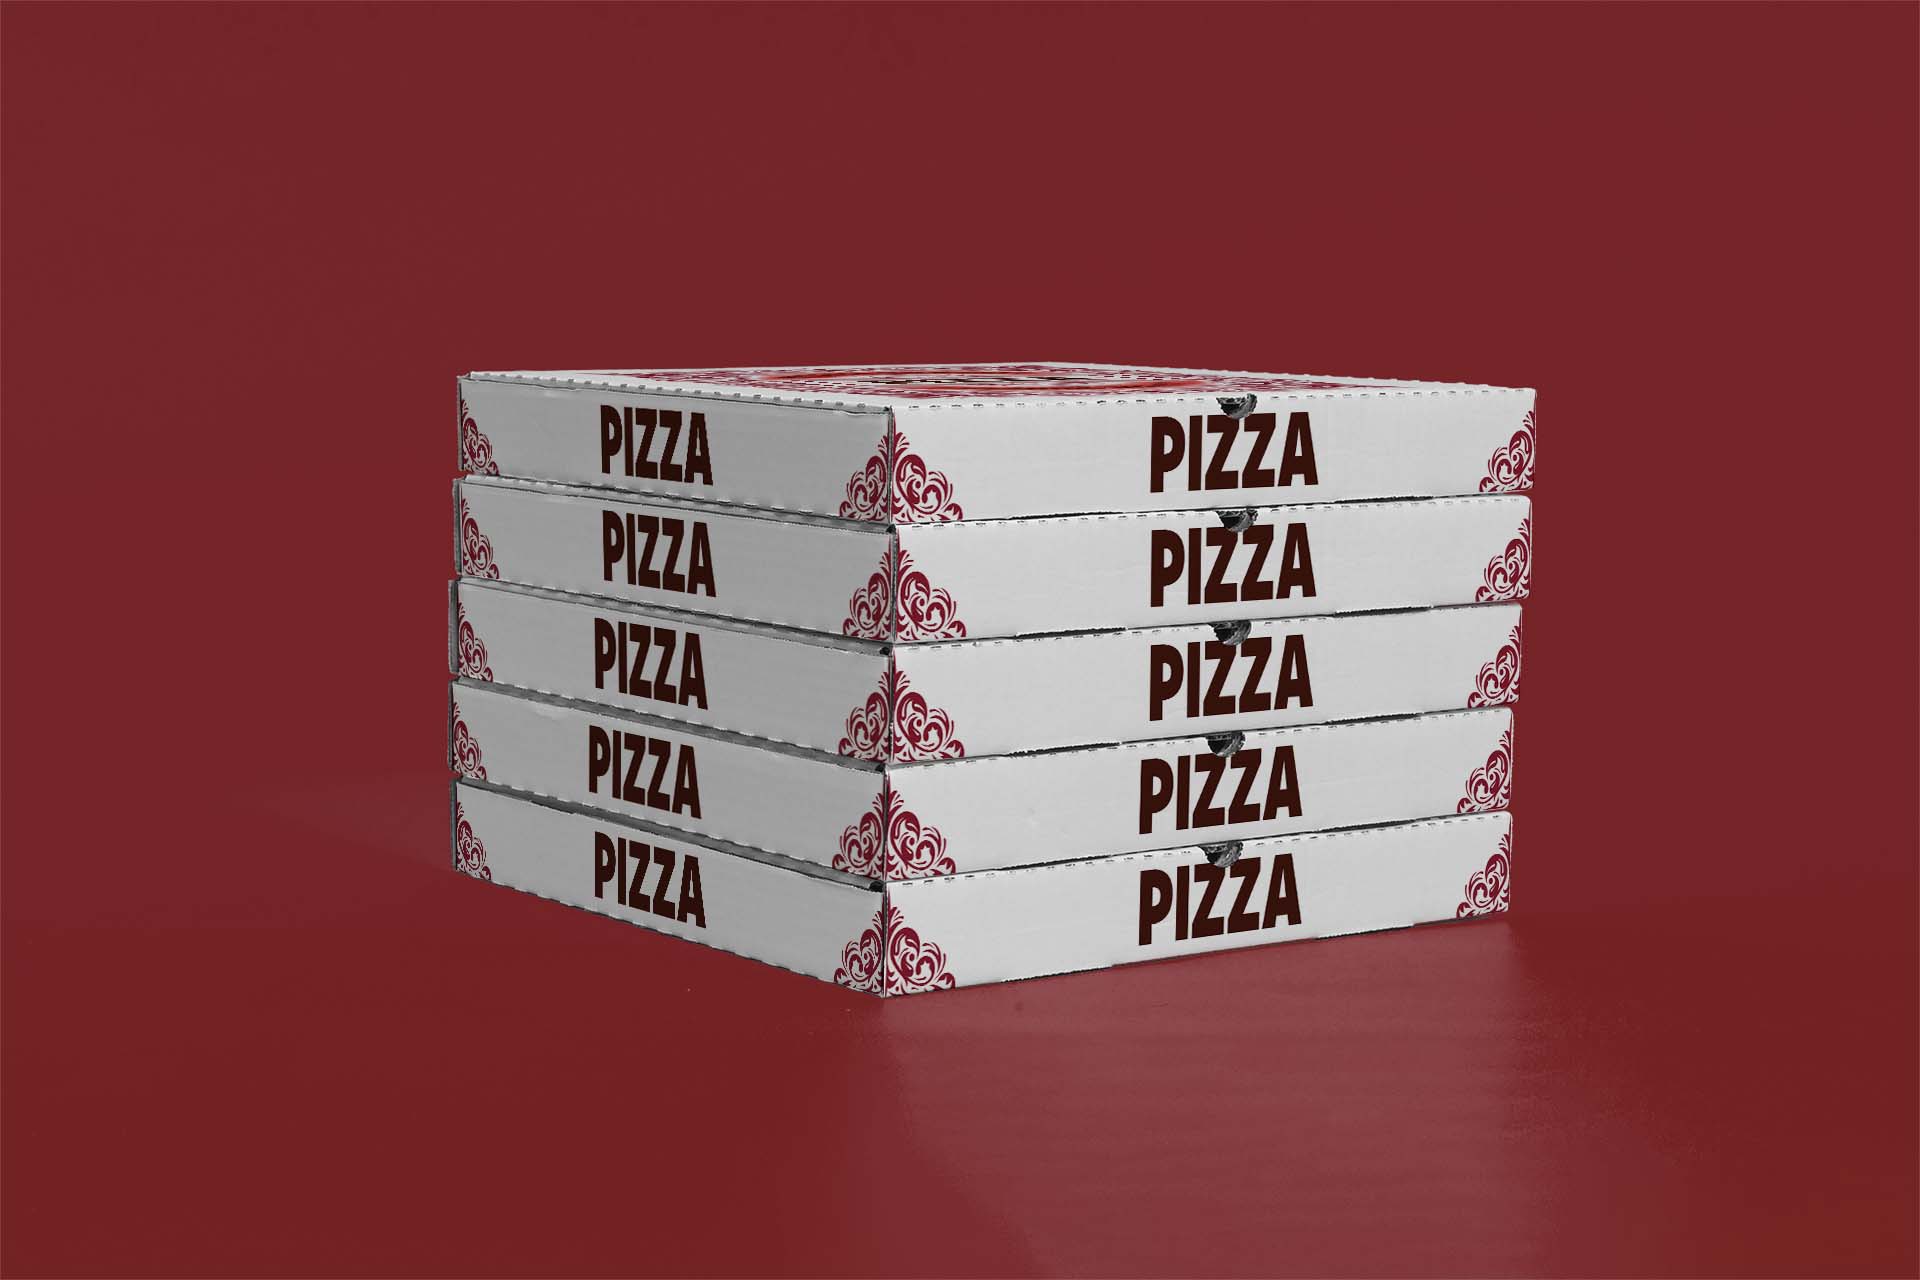 Kartonnen pizzadozen